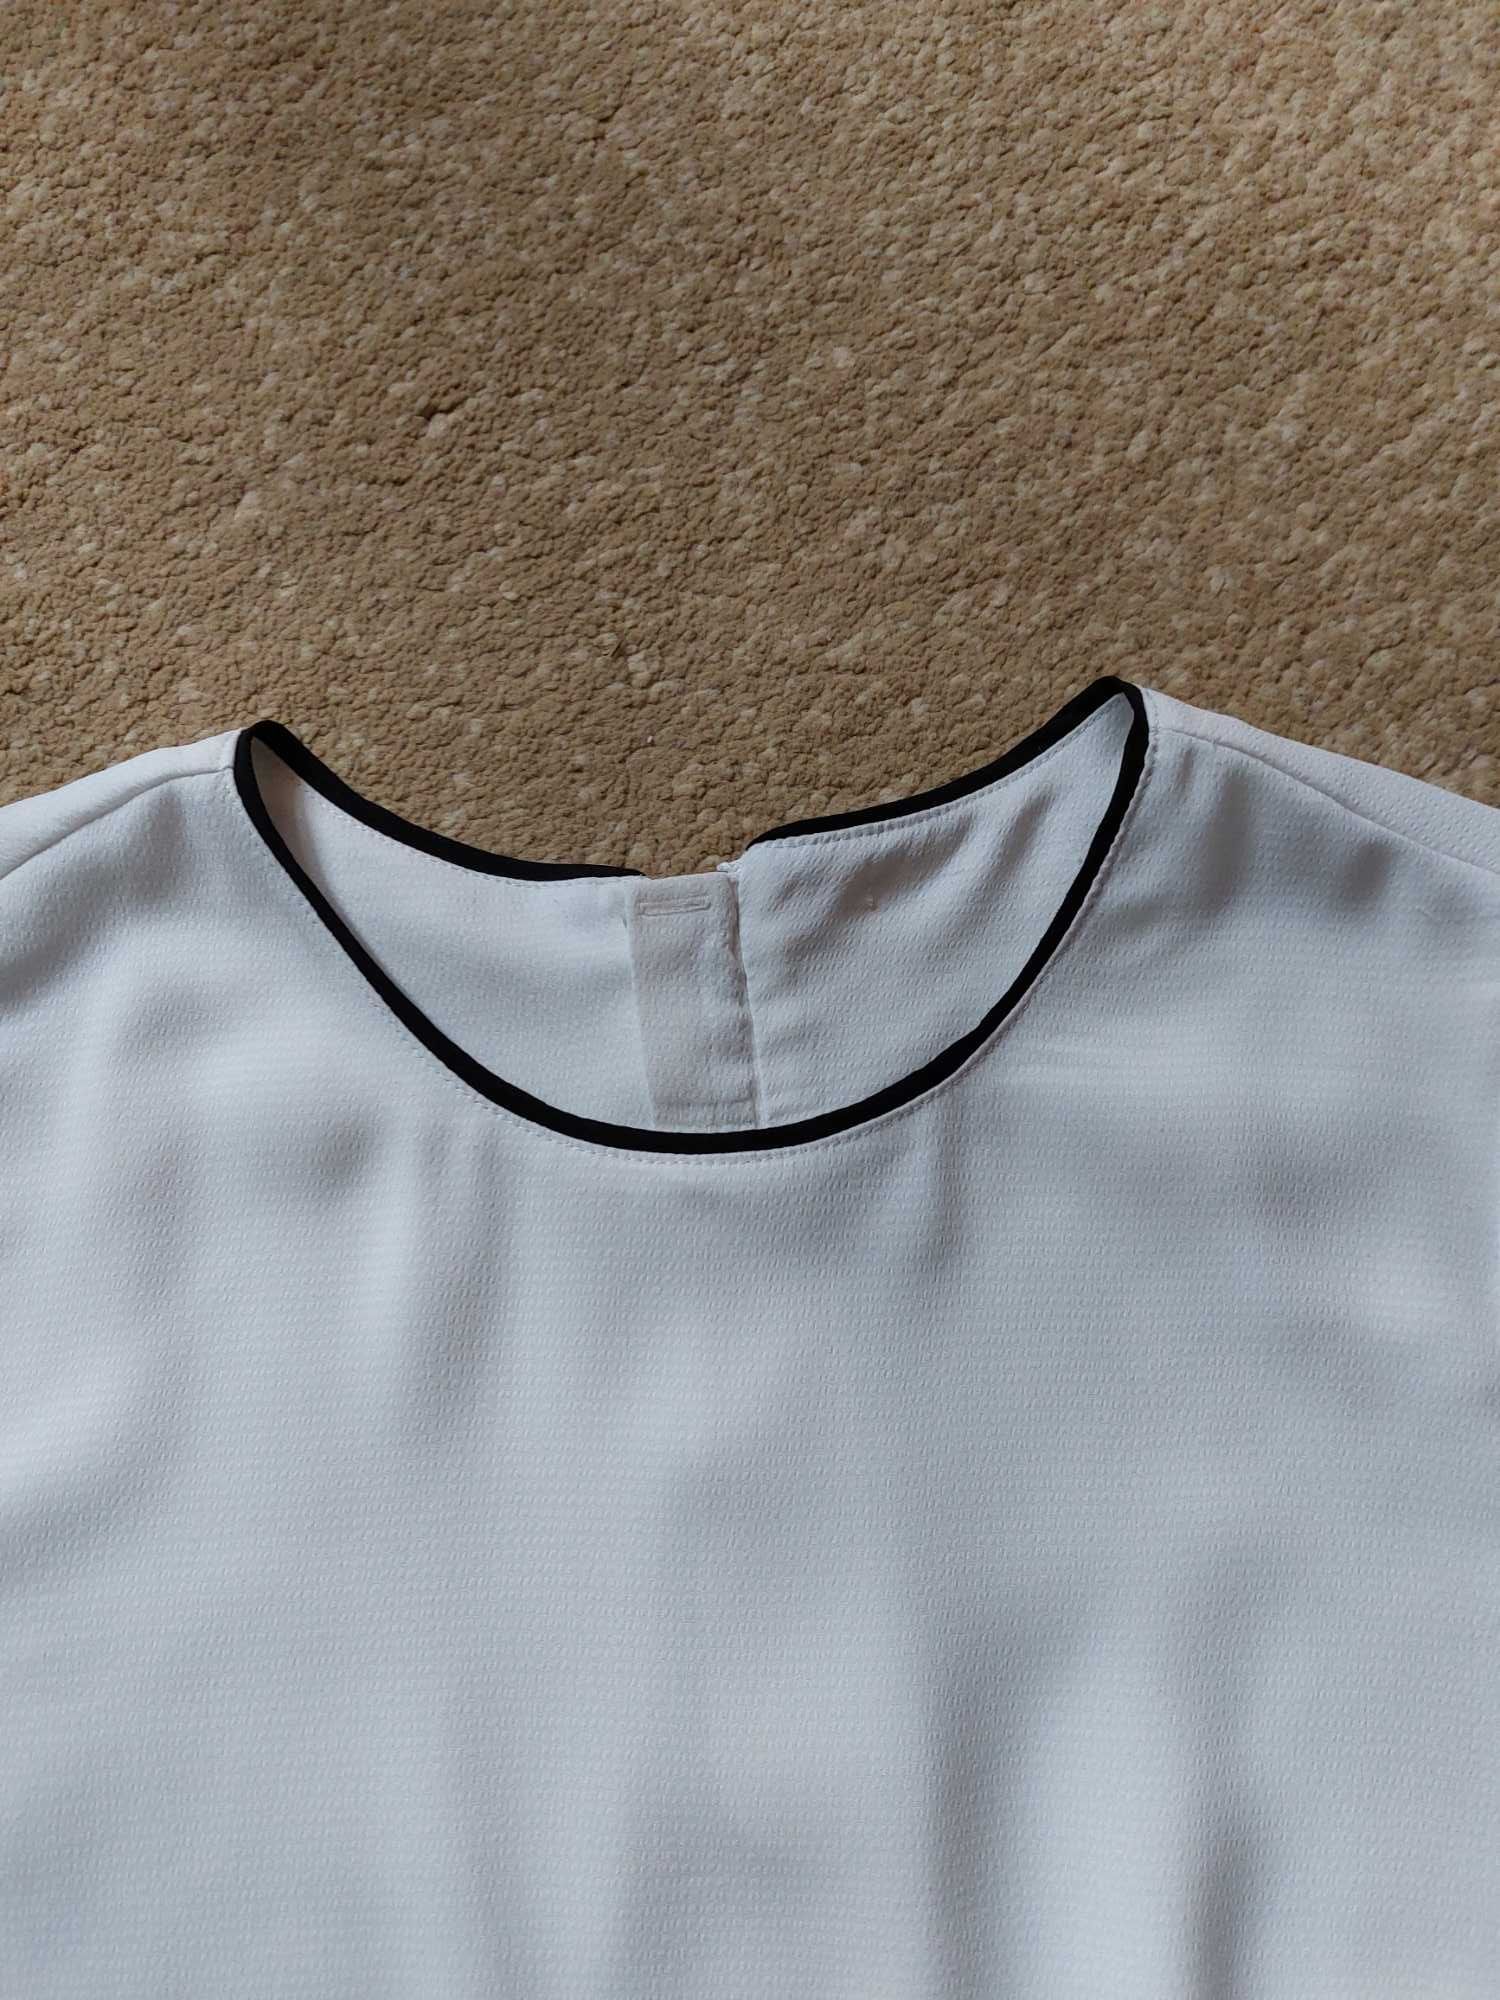 Biała bluzeczka H&M roz. 36/38